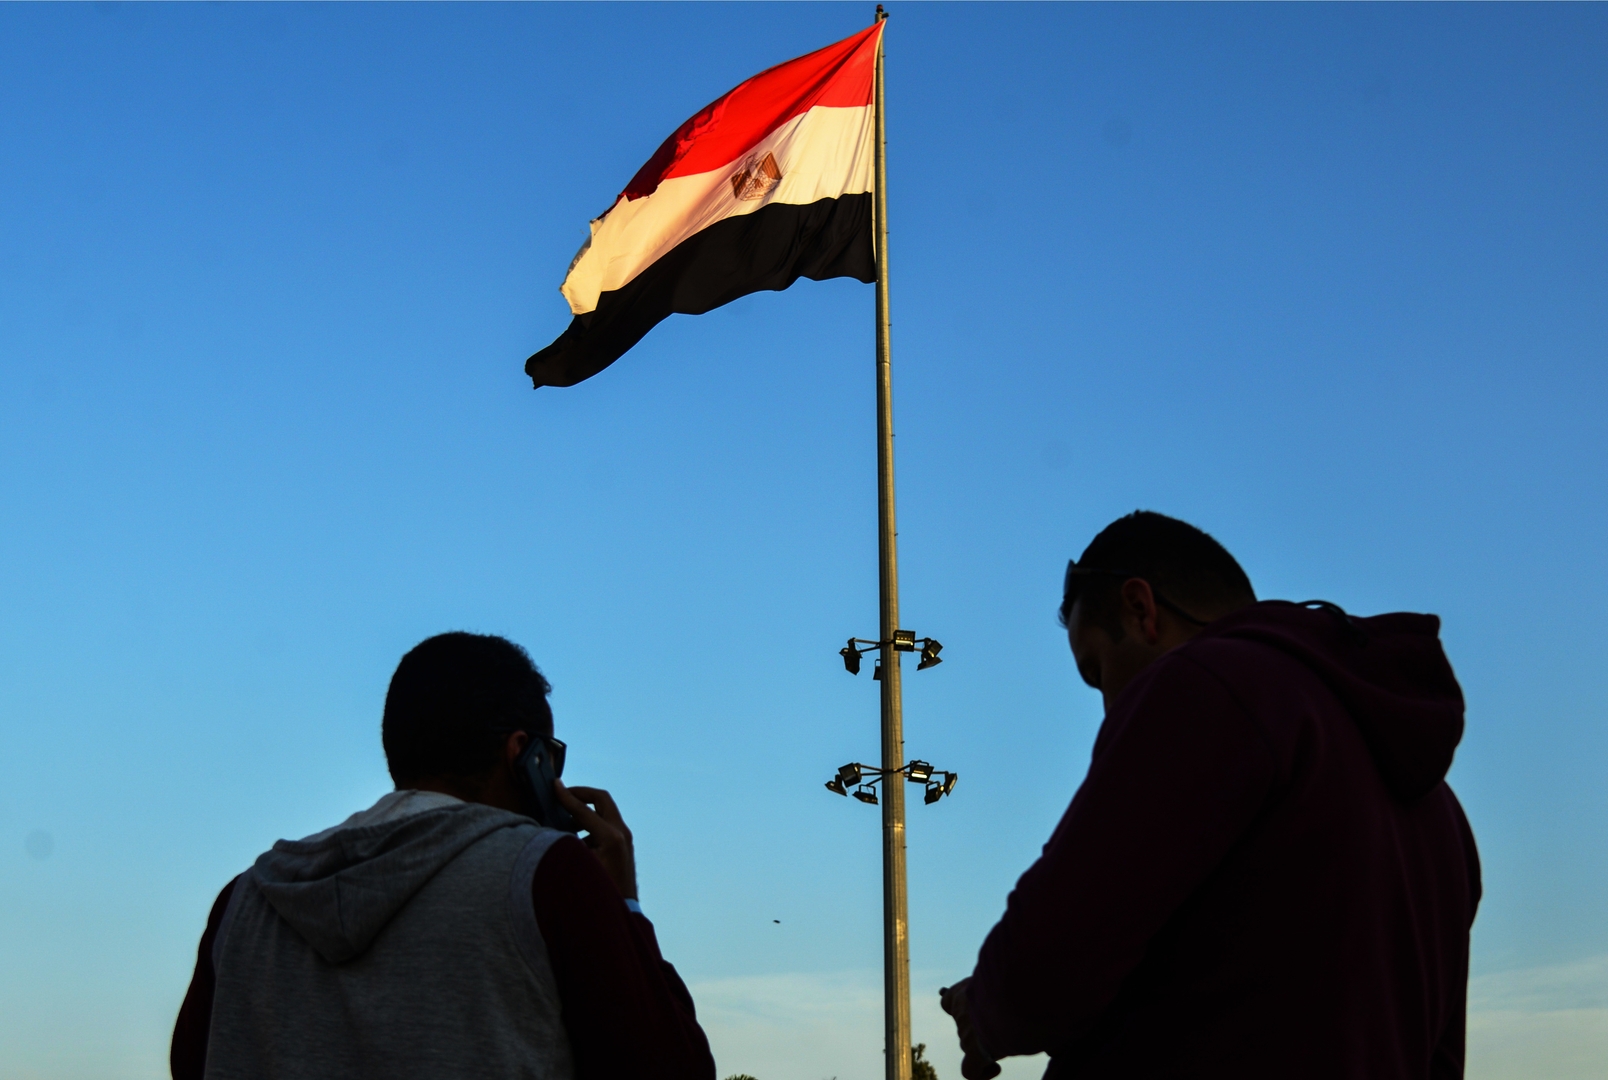 مصر.. إسقاط الجنسية عن مواطن التحق بجيش دولة أخرى